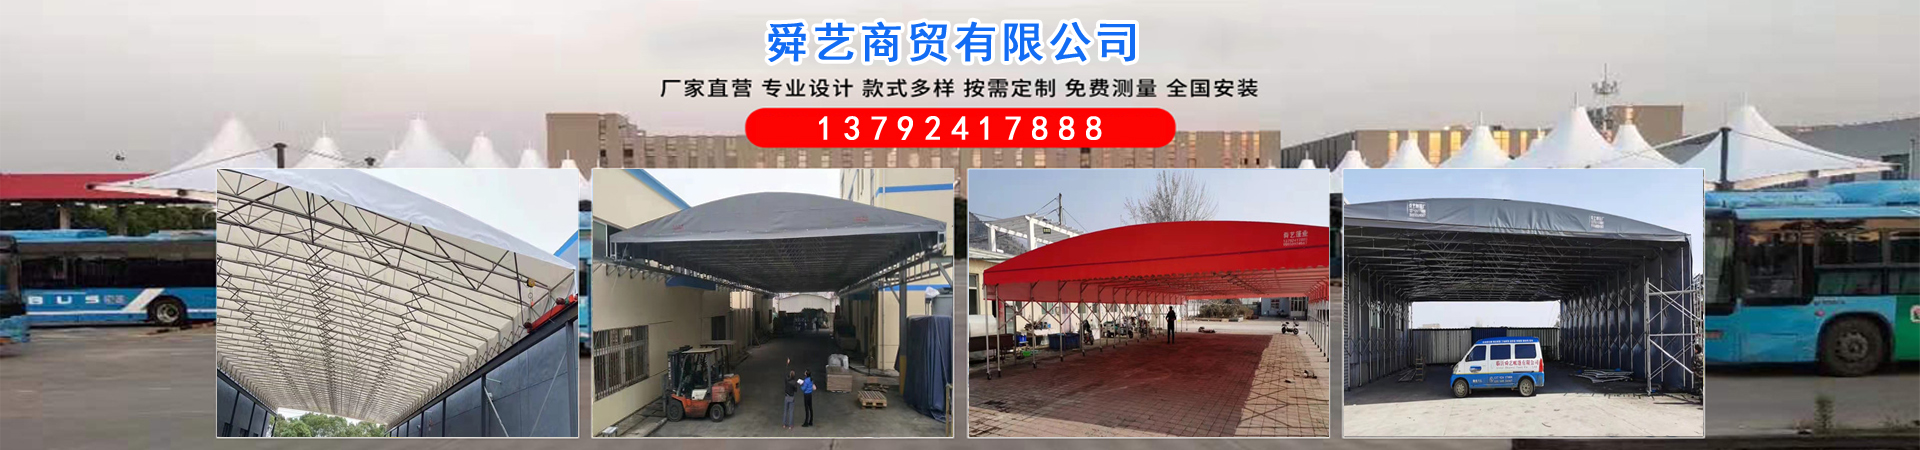 防雨篷布、西藏本地防雨篷布、西藏、西藏防雨篷布